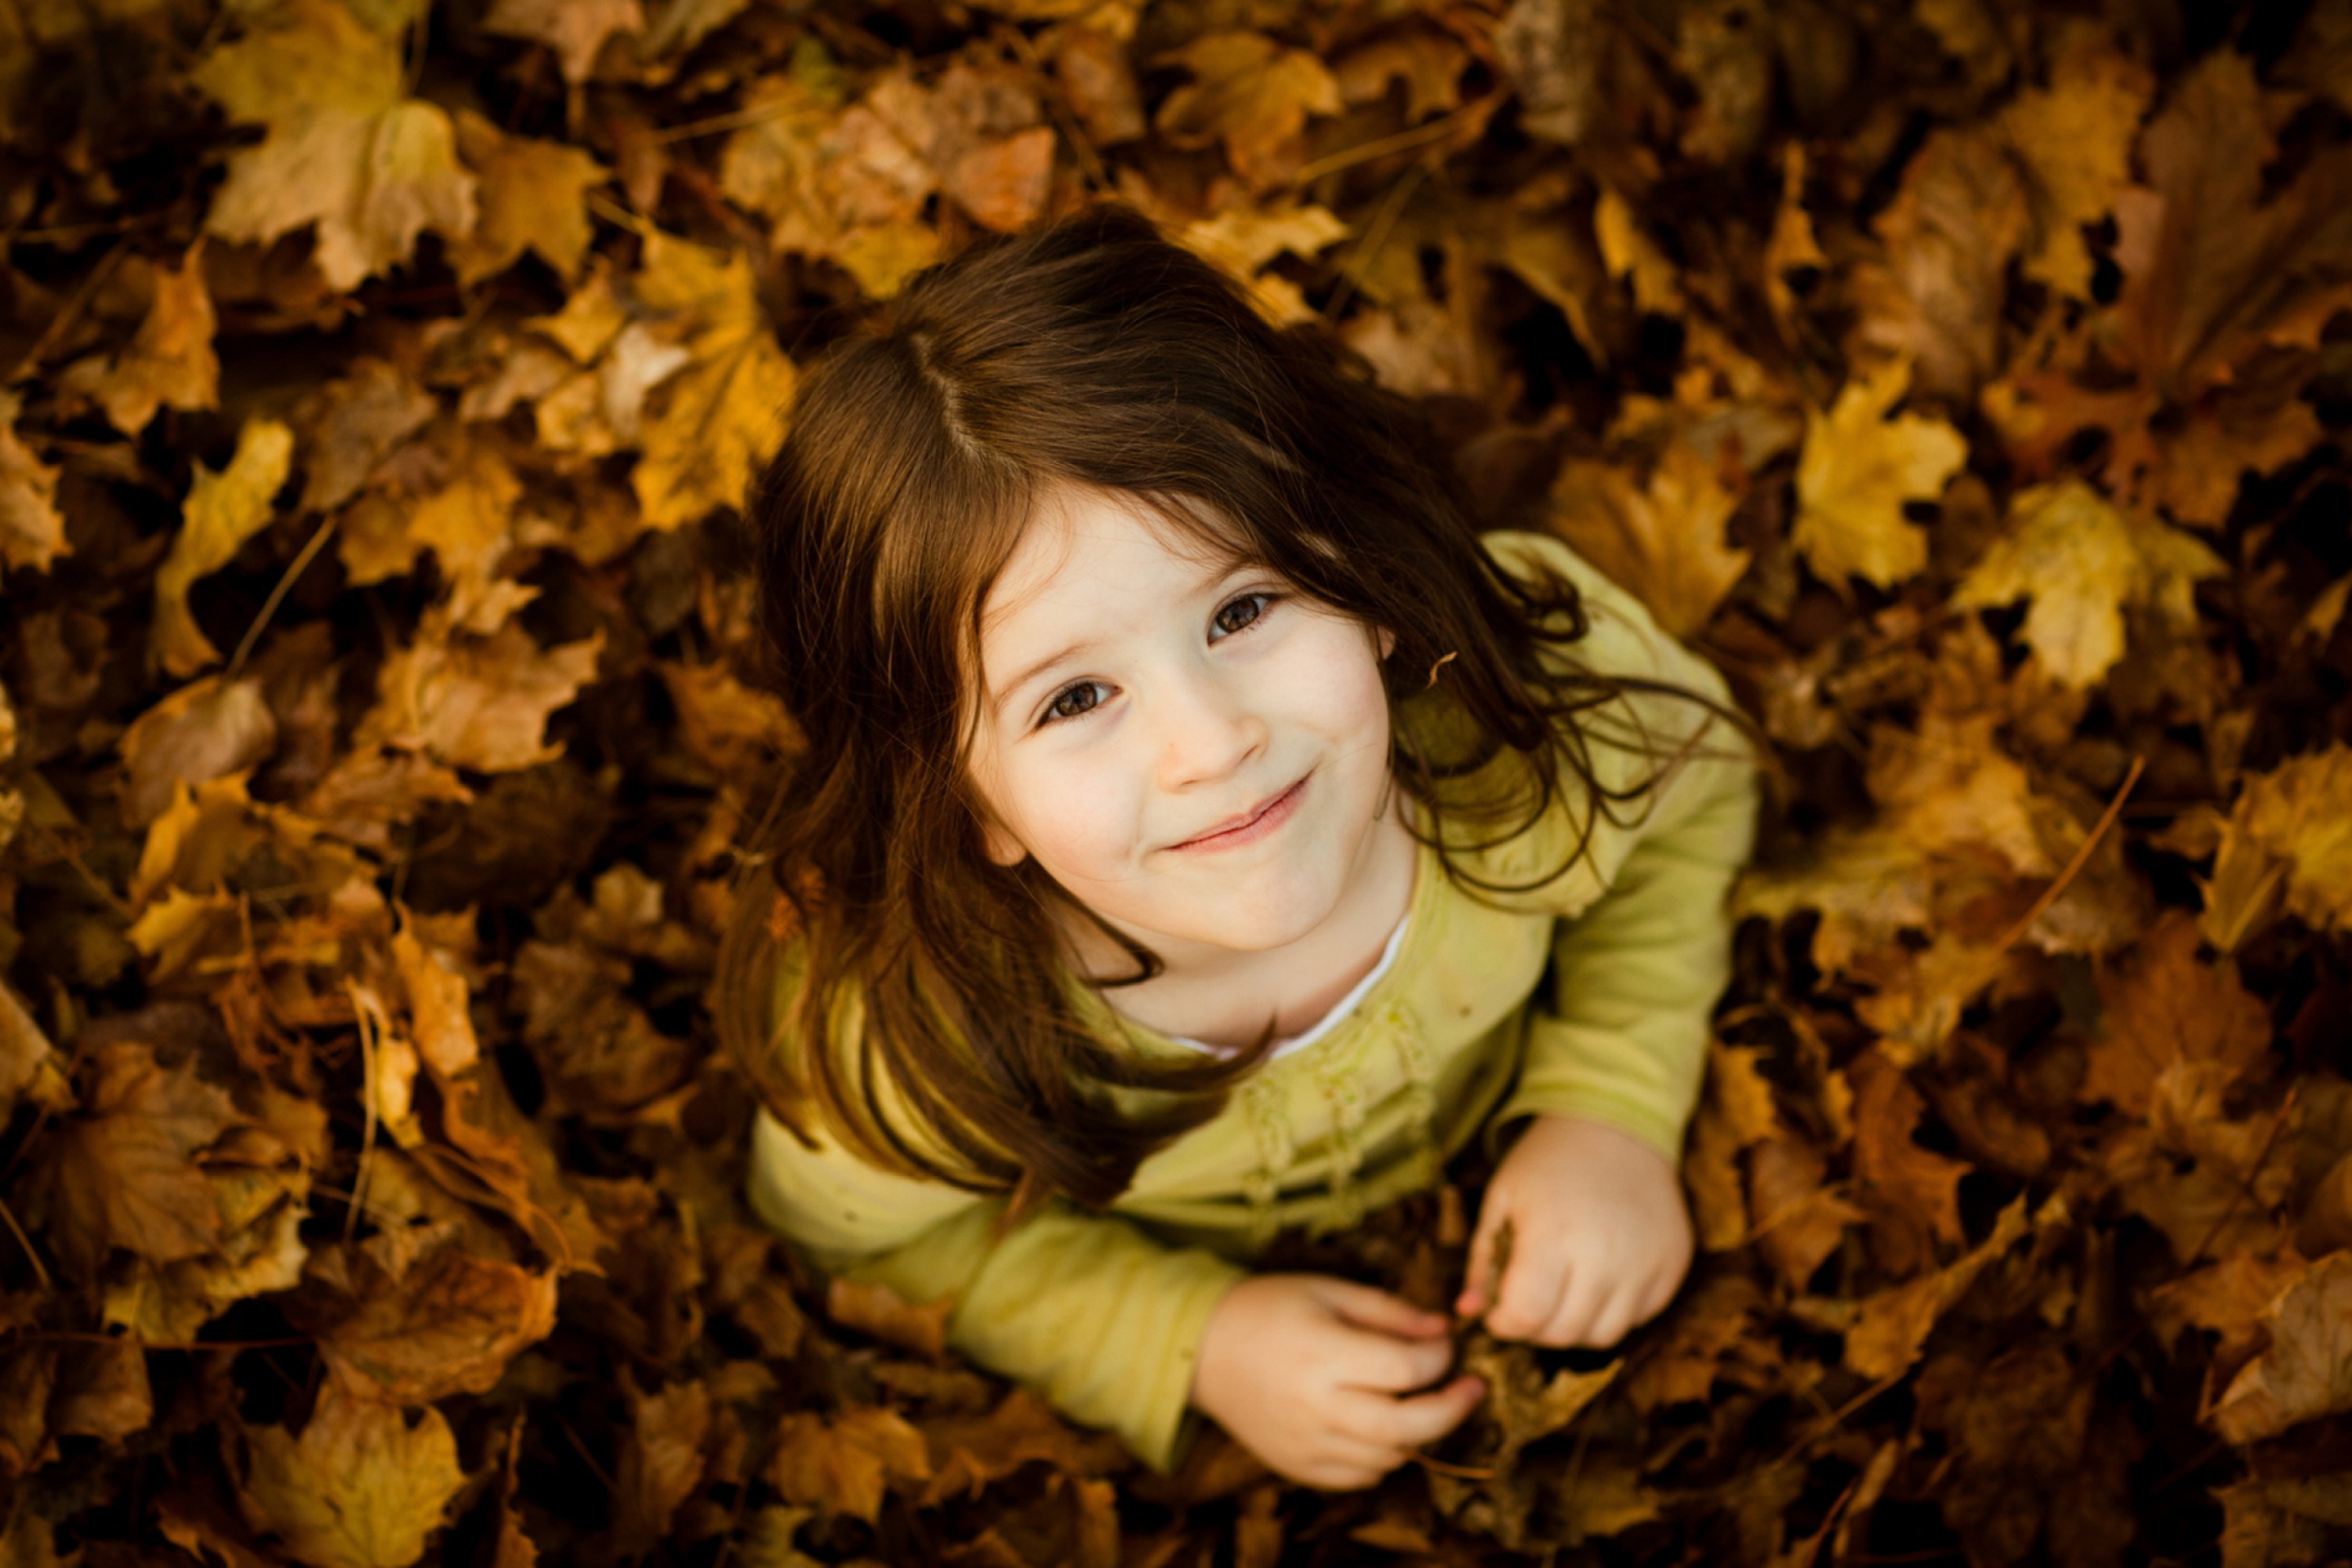 Cute girl pictures. Осенний детский портрет. Маленькие девчонки. Девочка осень. Улыбка осени.